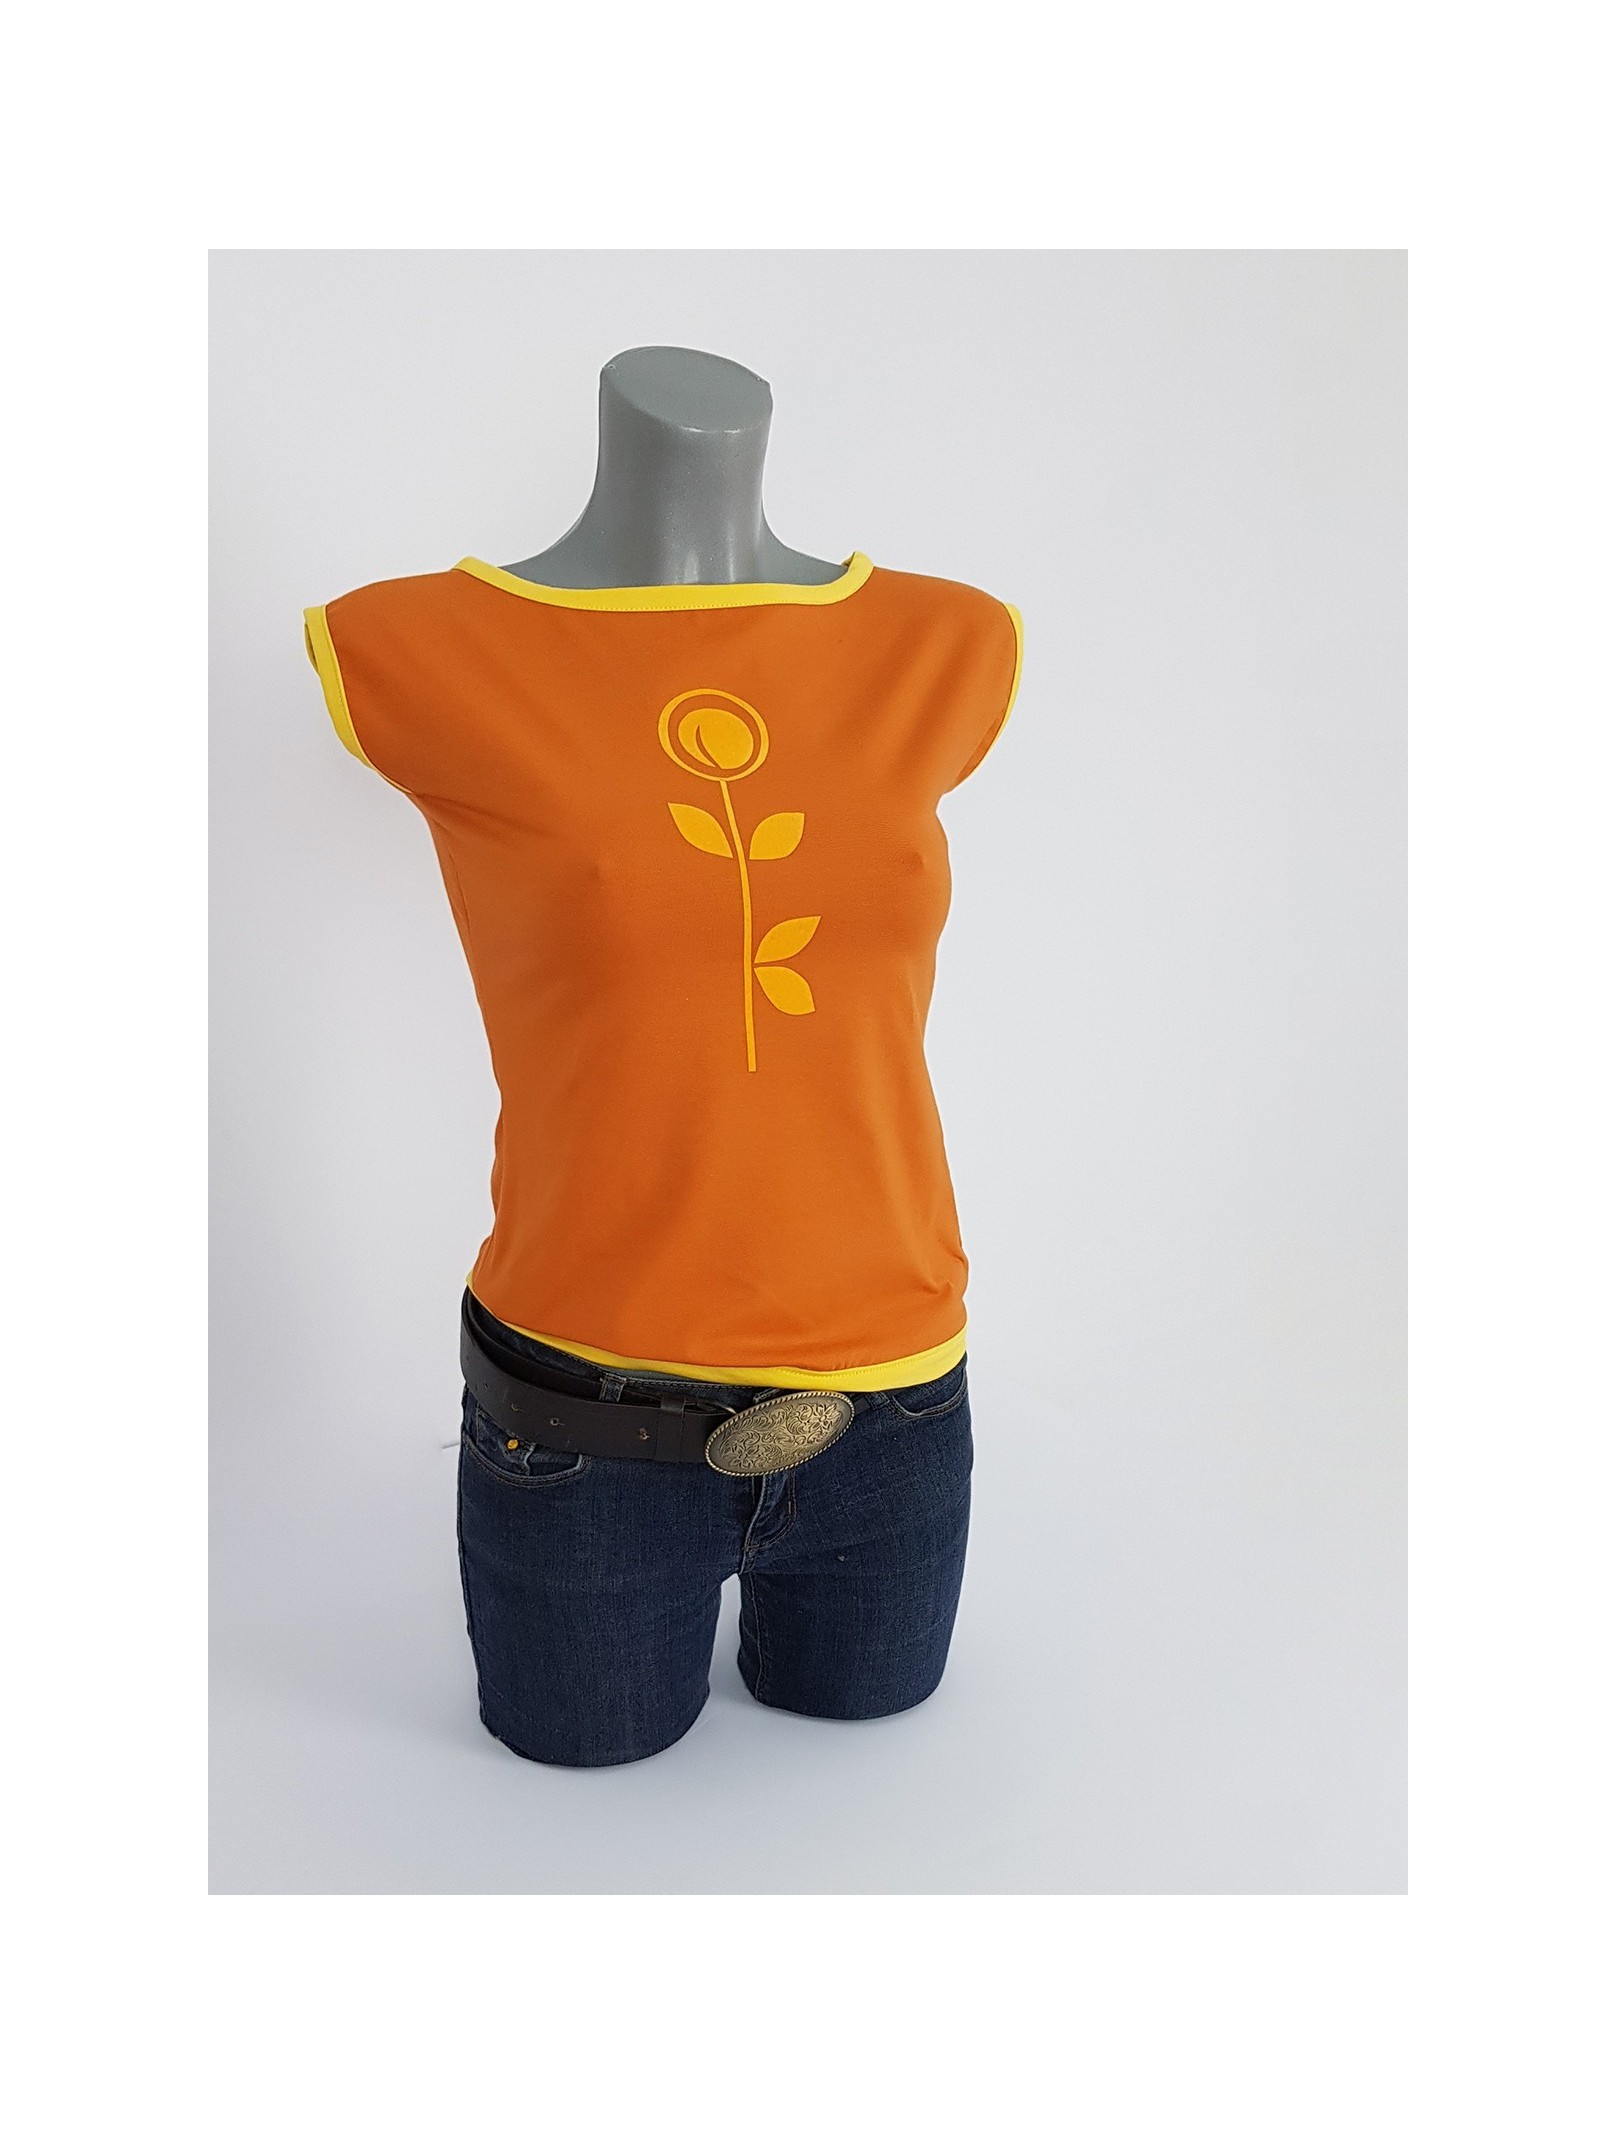 Damen T-Shirt in Gebrannte Orange und Safran Gelb